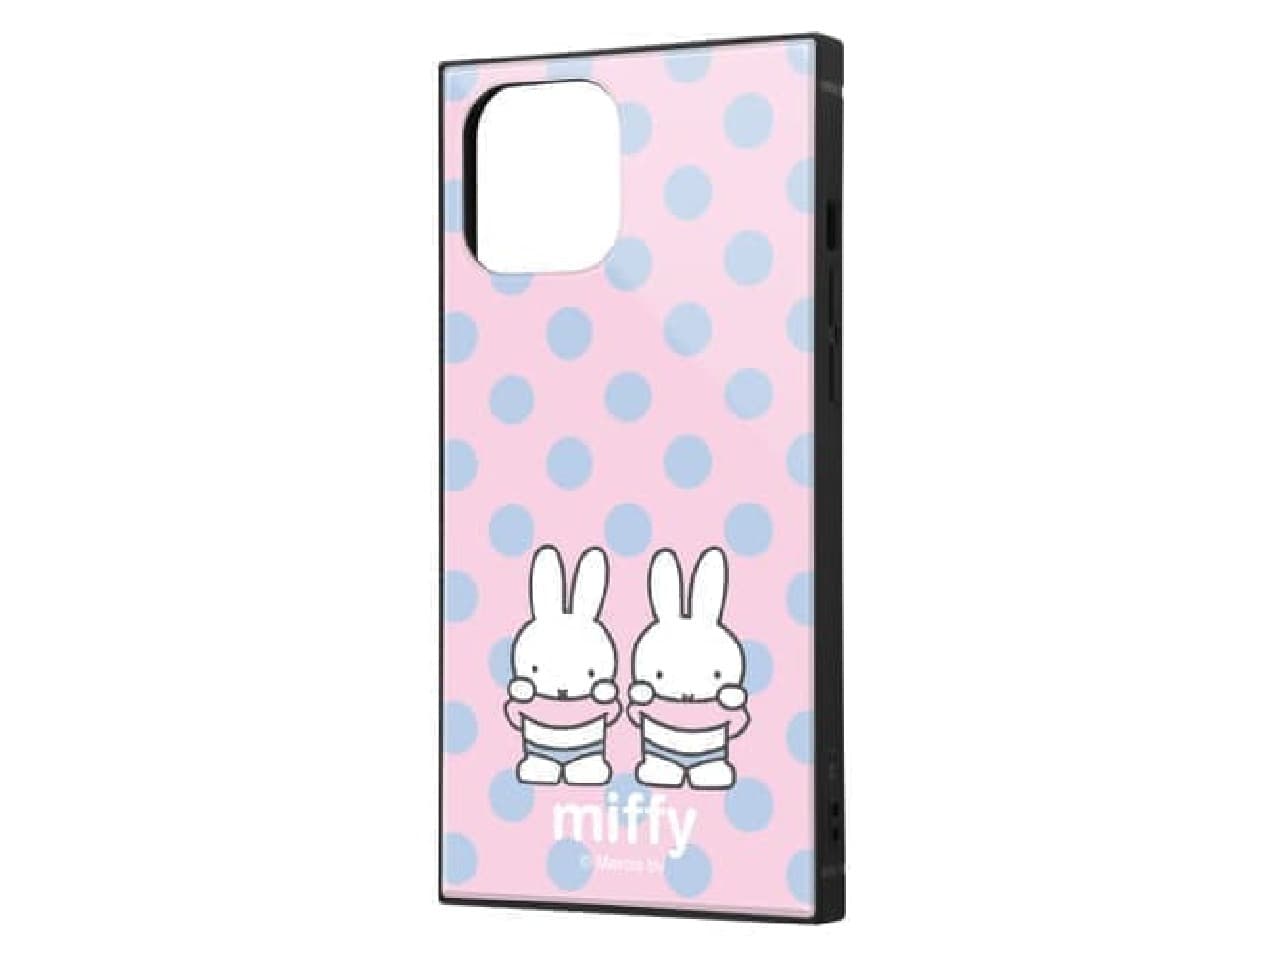 Straight and stylish! Miffy pattern smartphone case --Cute polka dot pattern